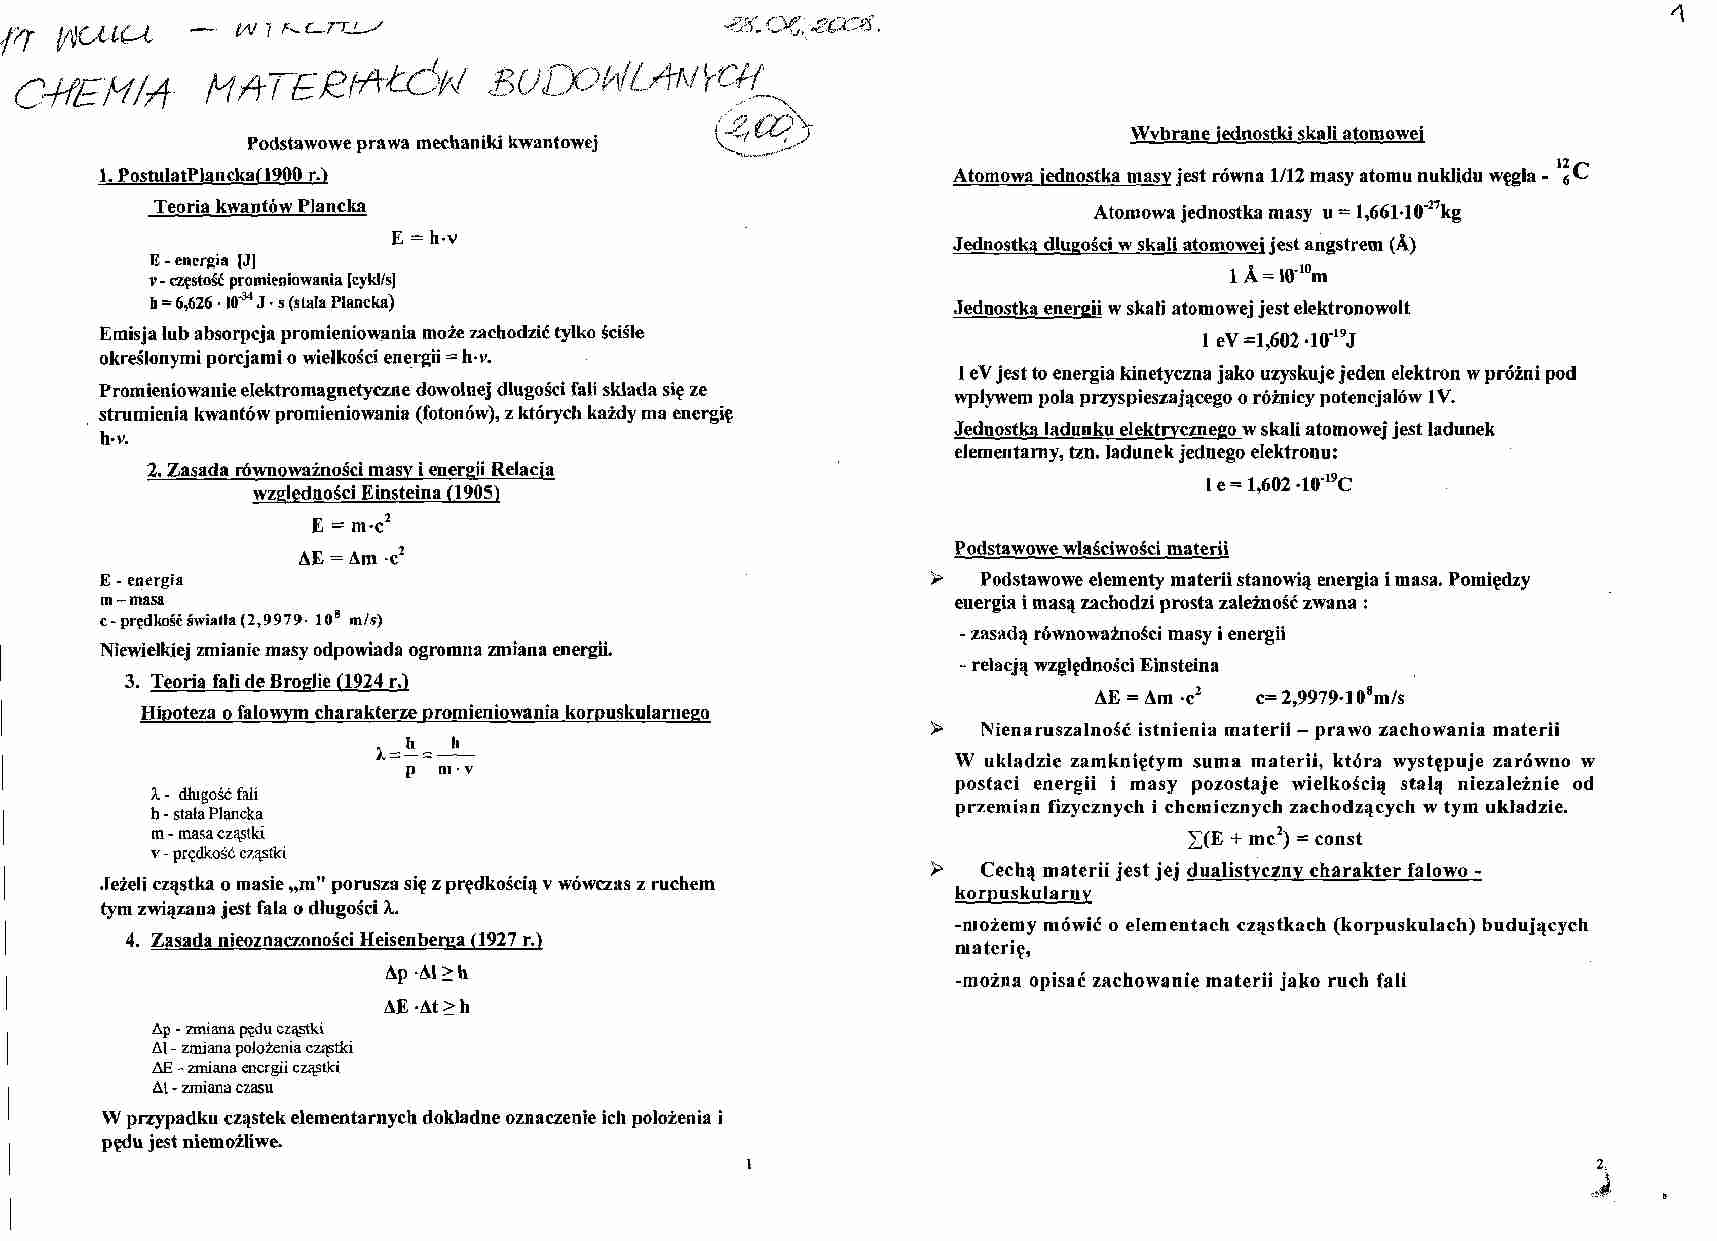 Chemia materiałów bud. - wyklad 1 - strona 1